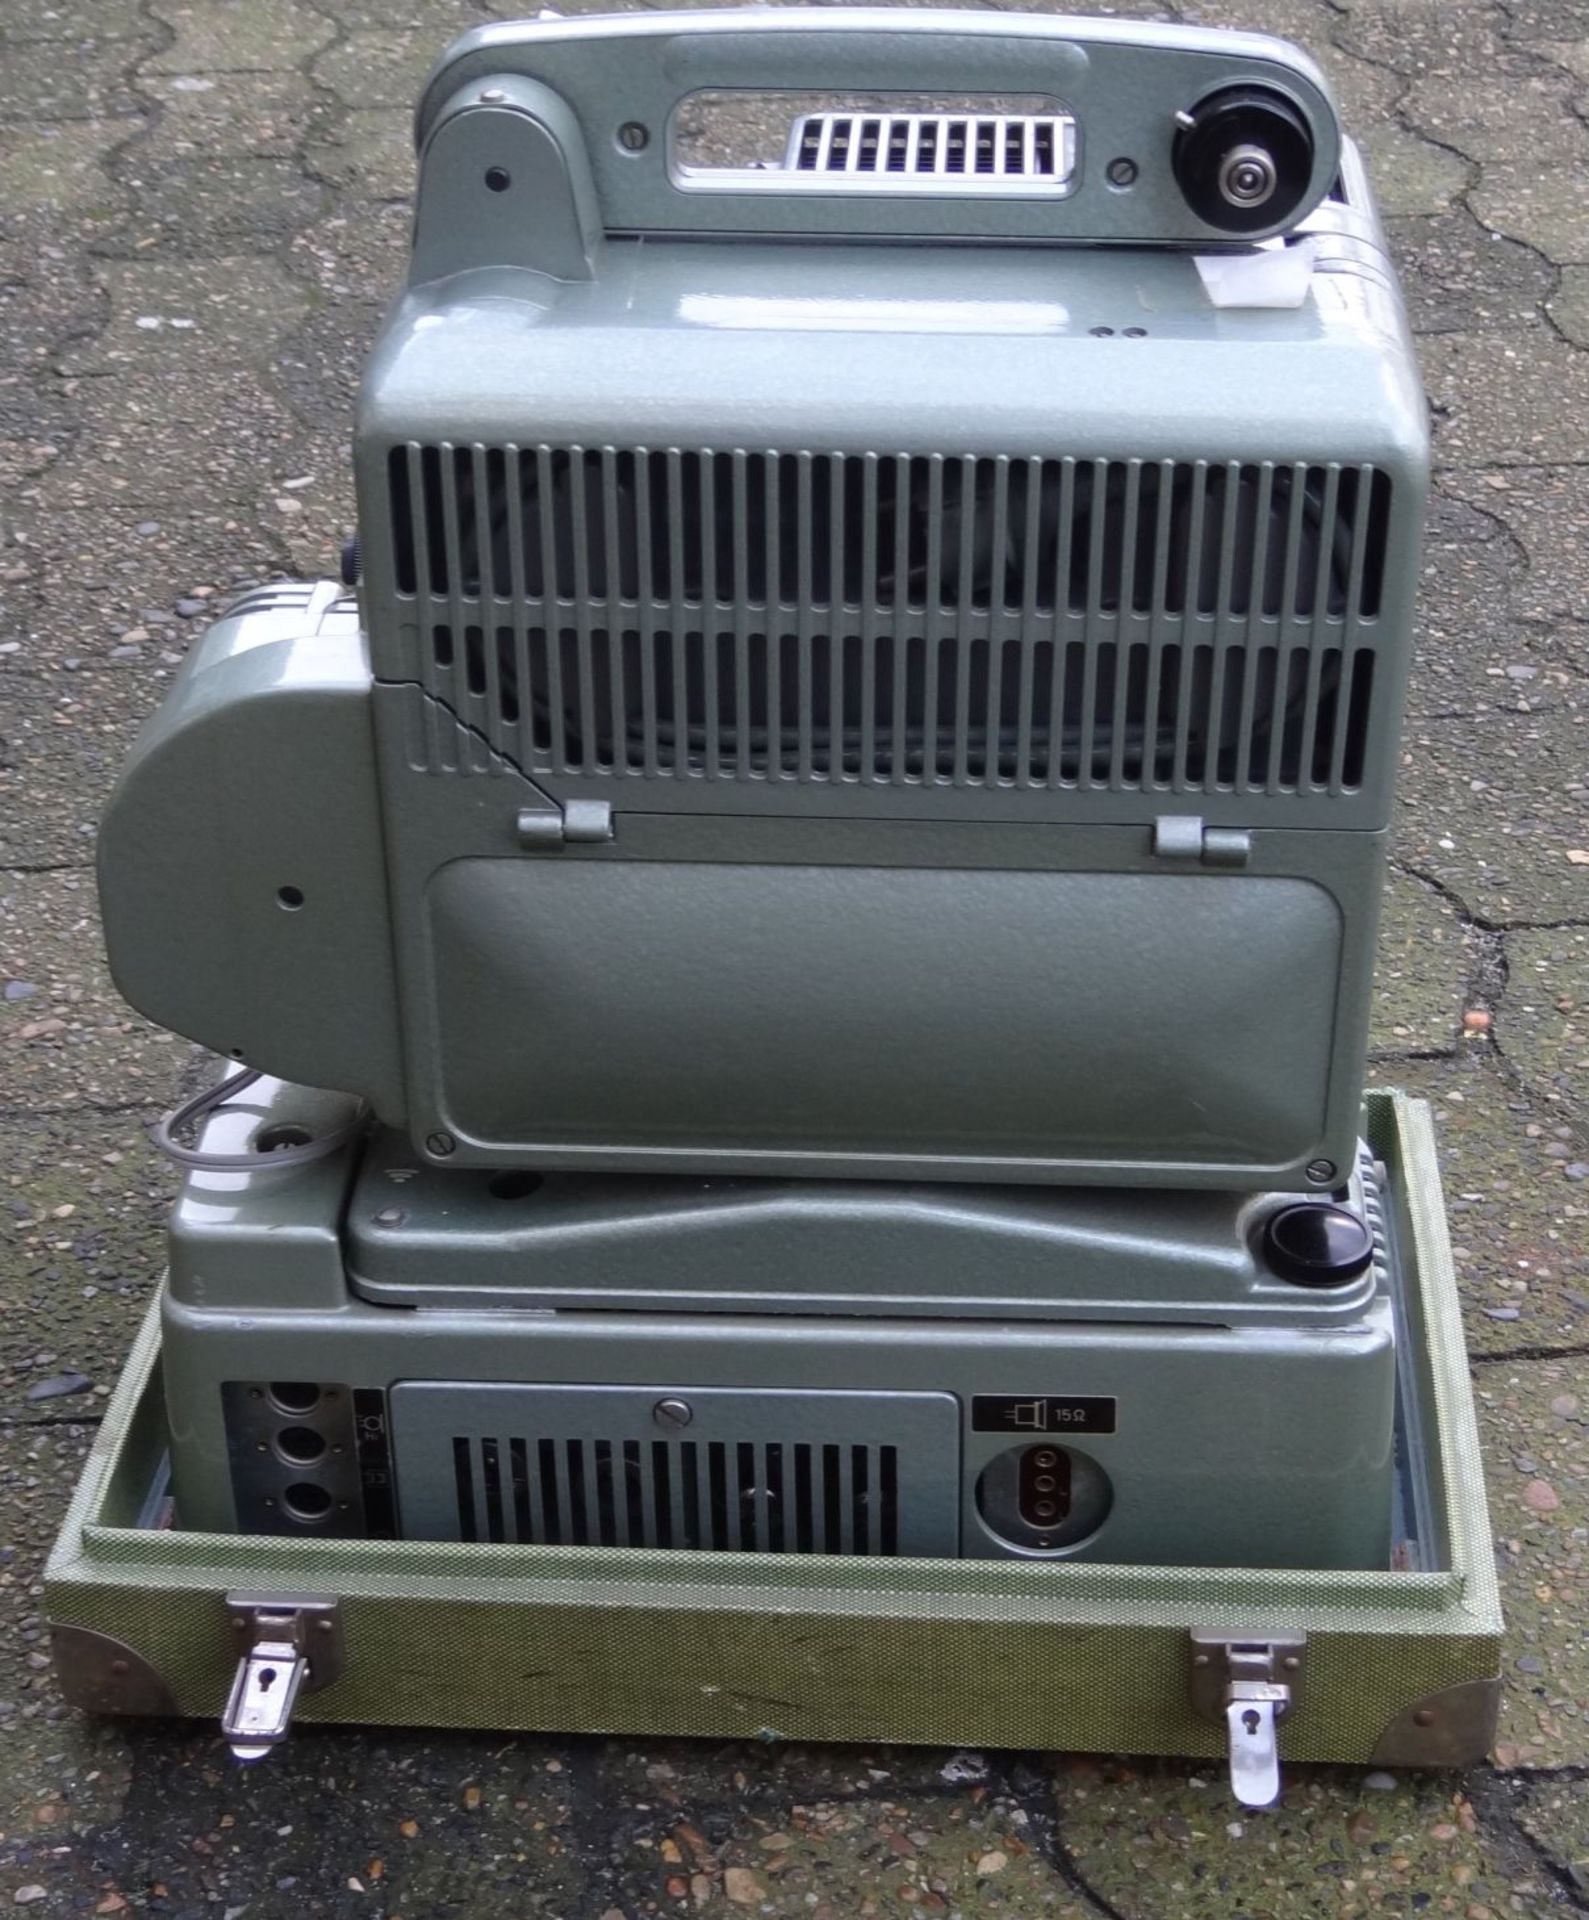 grosser Tonfilm-Projektor "Siemens" in Koffer, H-50 cm, 28x42 cm, 26 kg. - Bild 7 aus 10